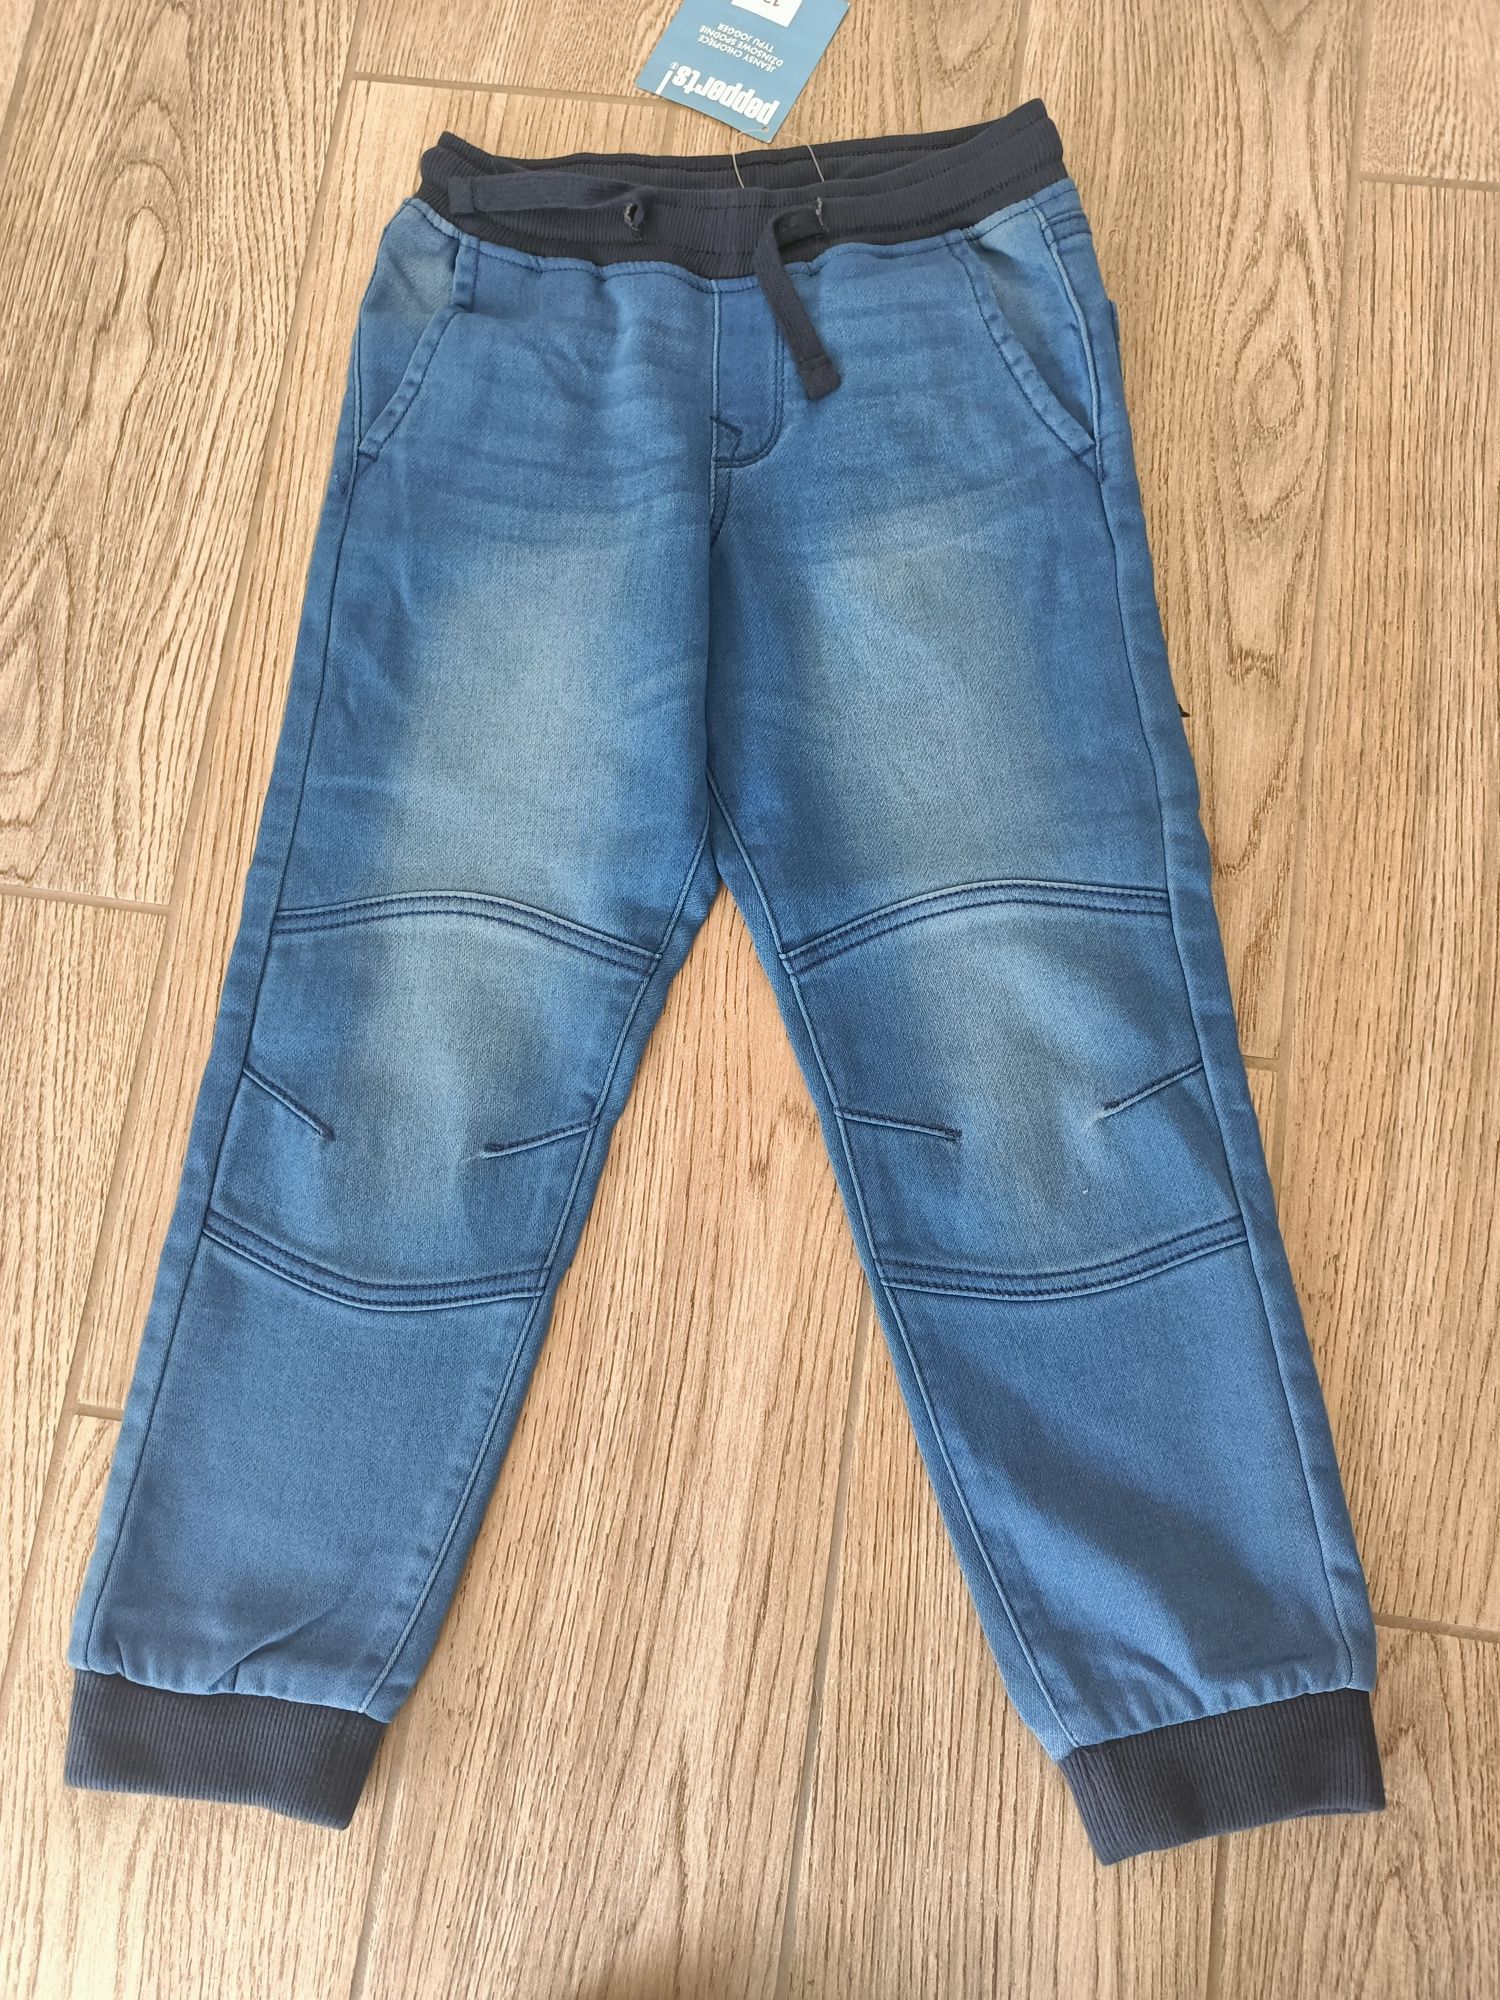 Spodnie jeansowe 134 cm NOWE + koszula 2 szt.